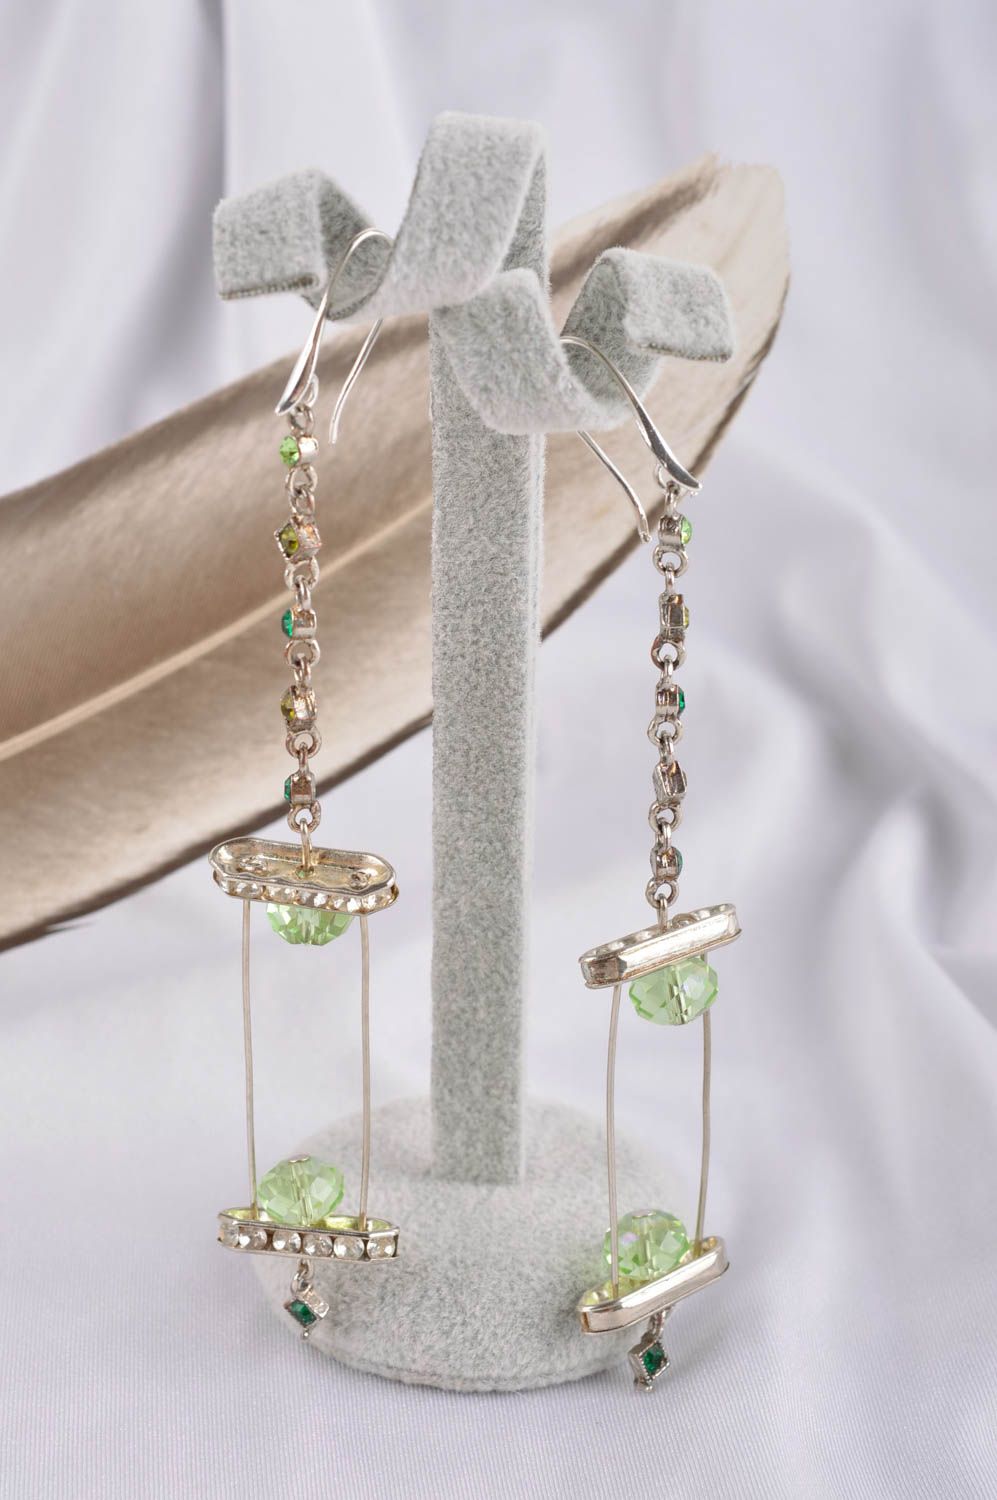 Handmade earrings fashion jewelry dangling earrings best gifts for women photo 1